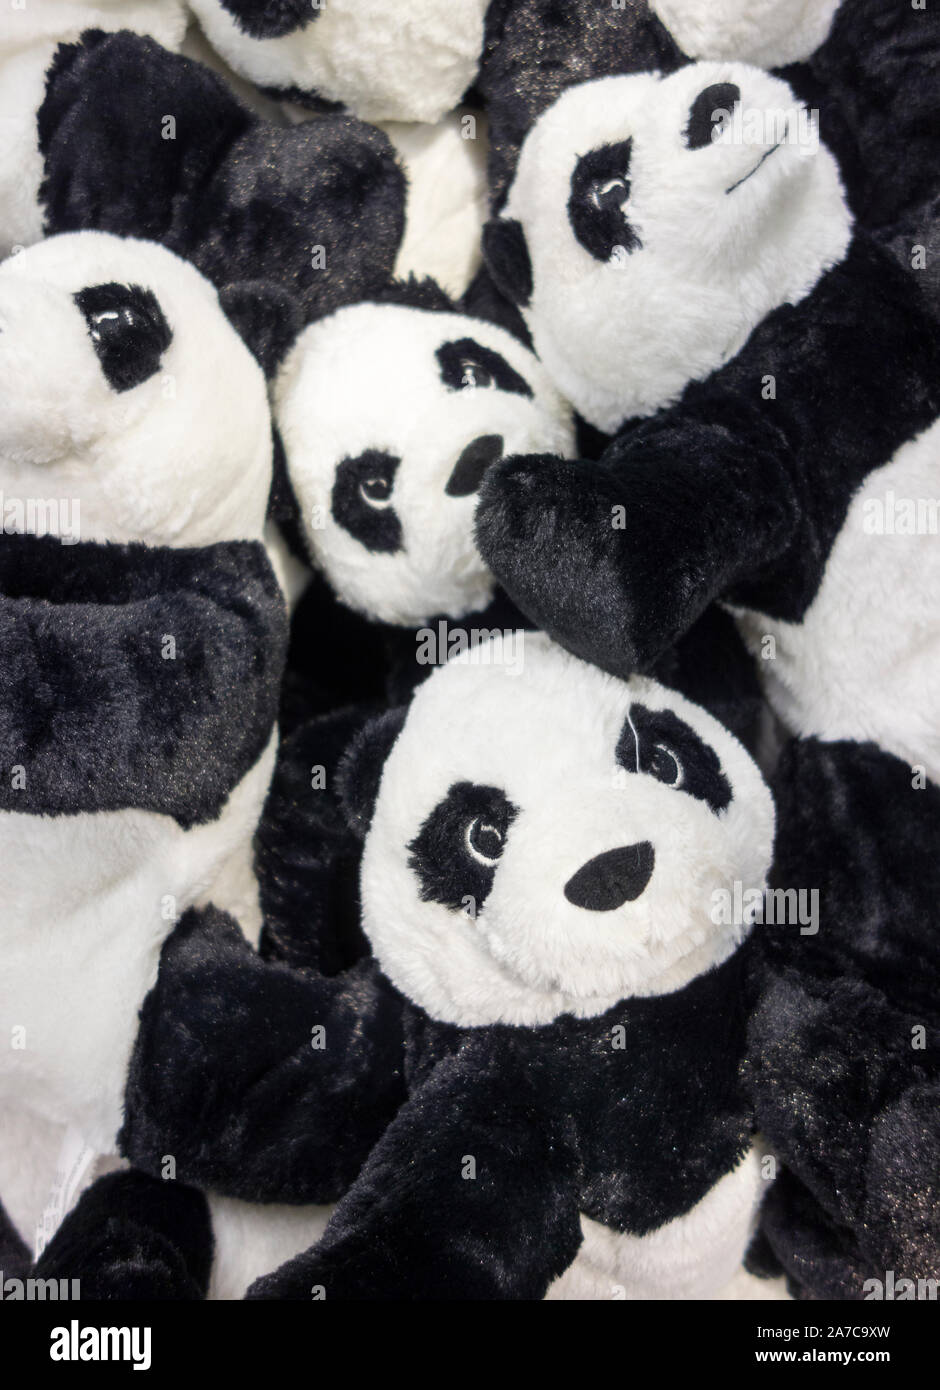 Giocattoli panda immagini e fotografie stock ad alta risoluzione - Alamy